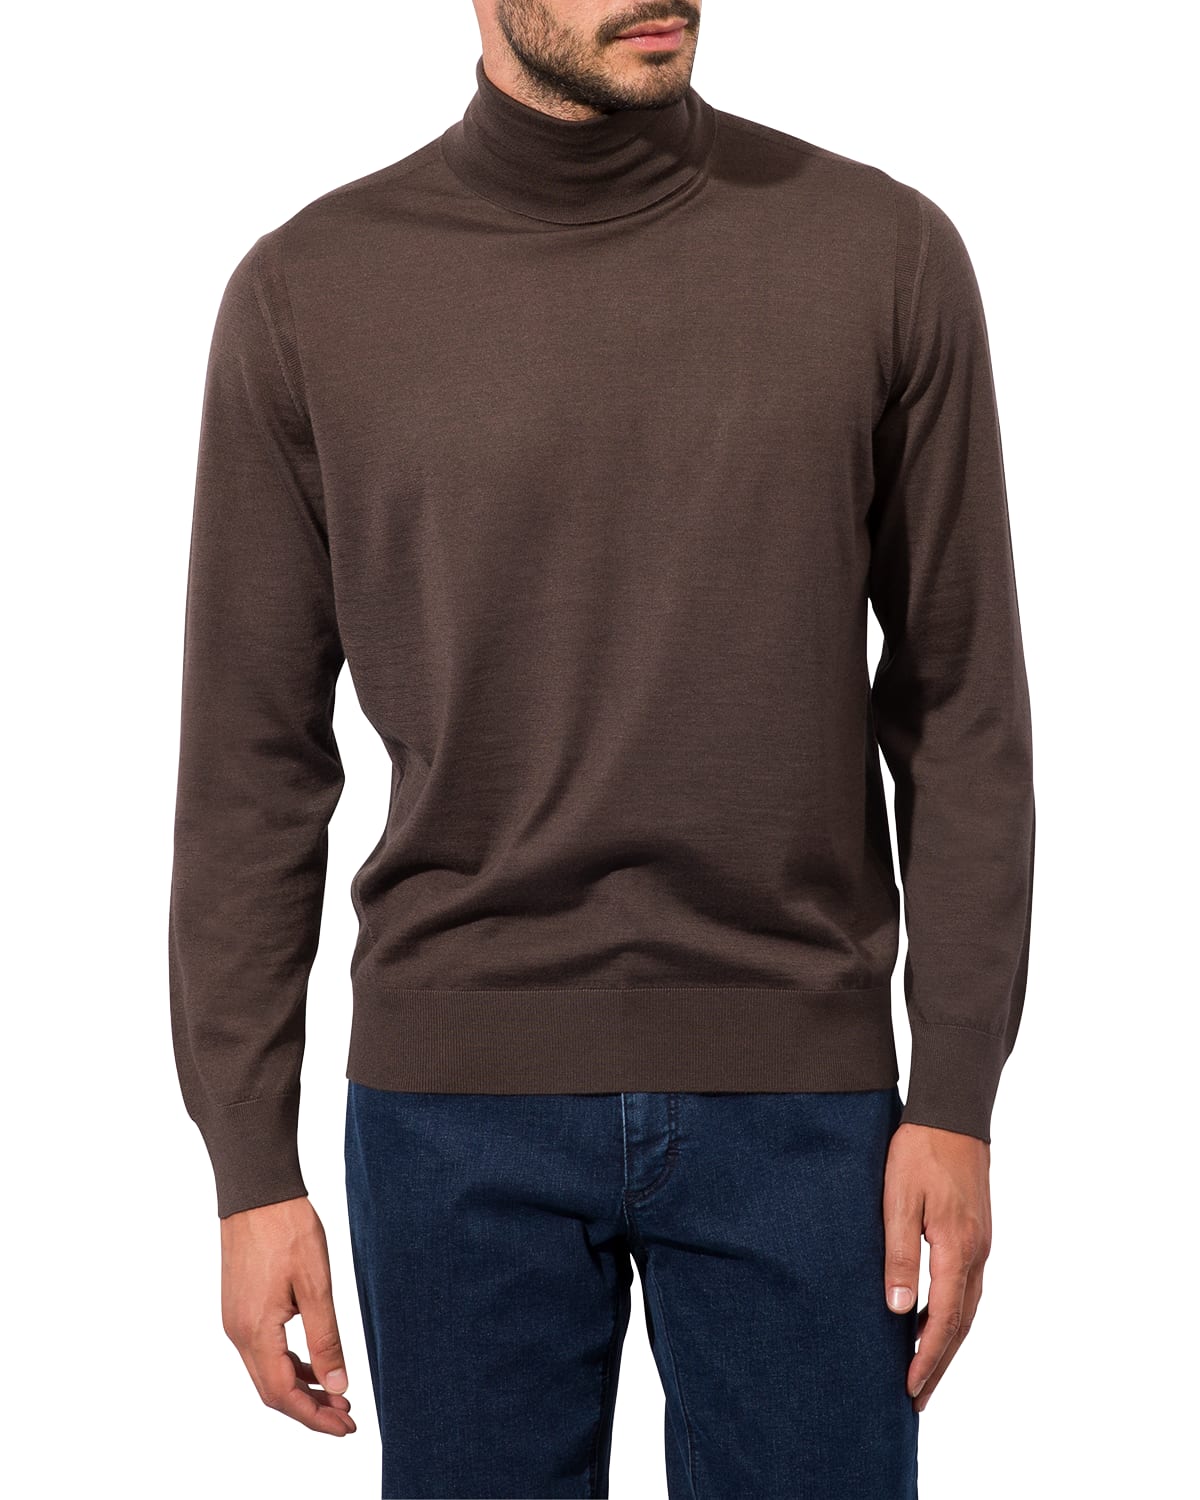 Ermenegildo Zegna Men's Turtleneck Cashmere Sweater | Neiman Marcus